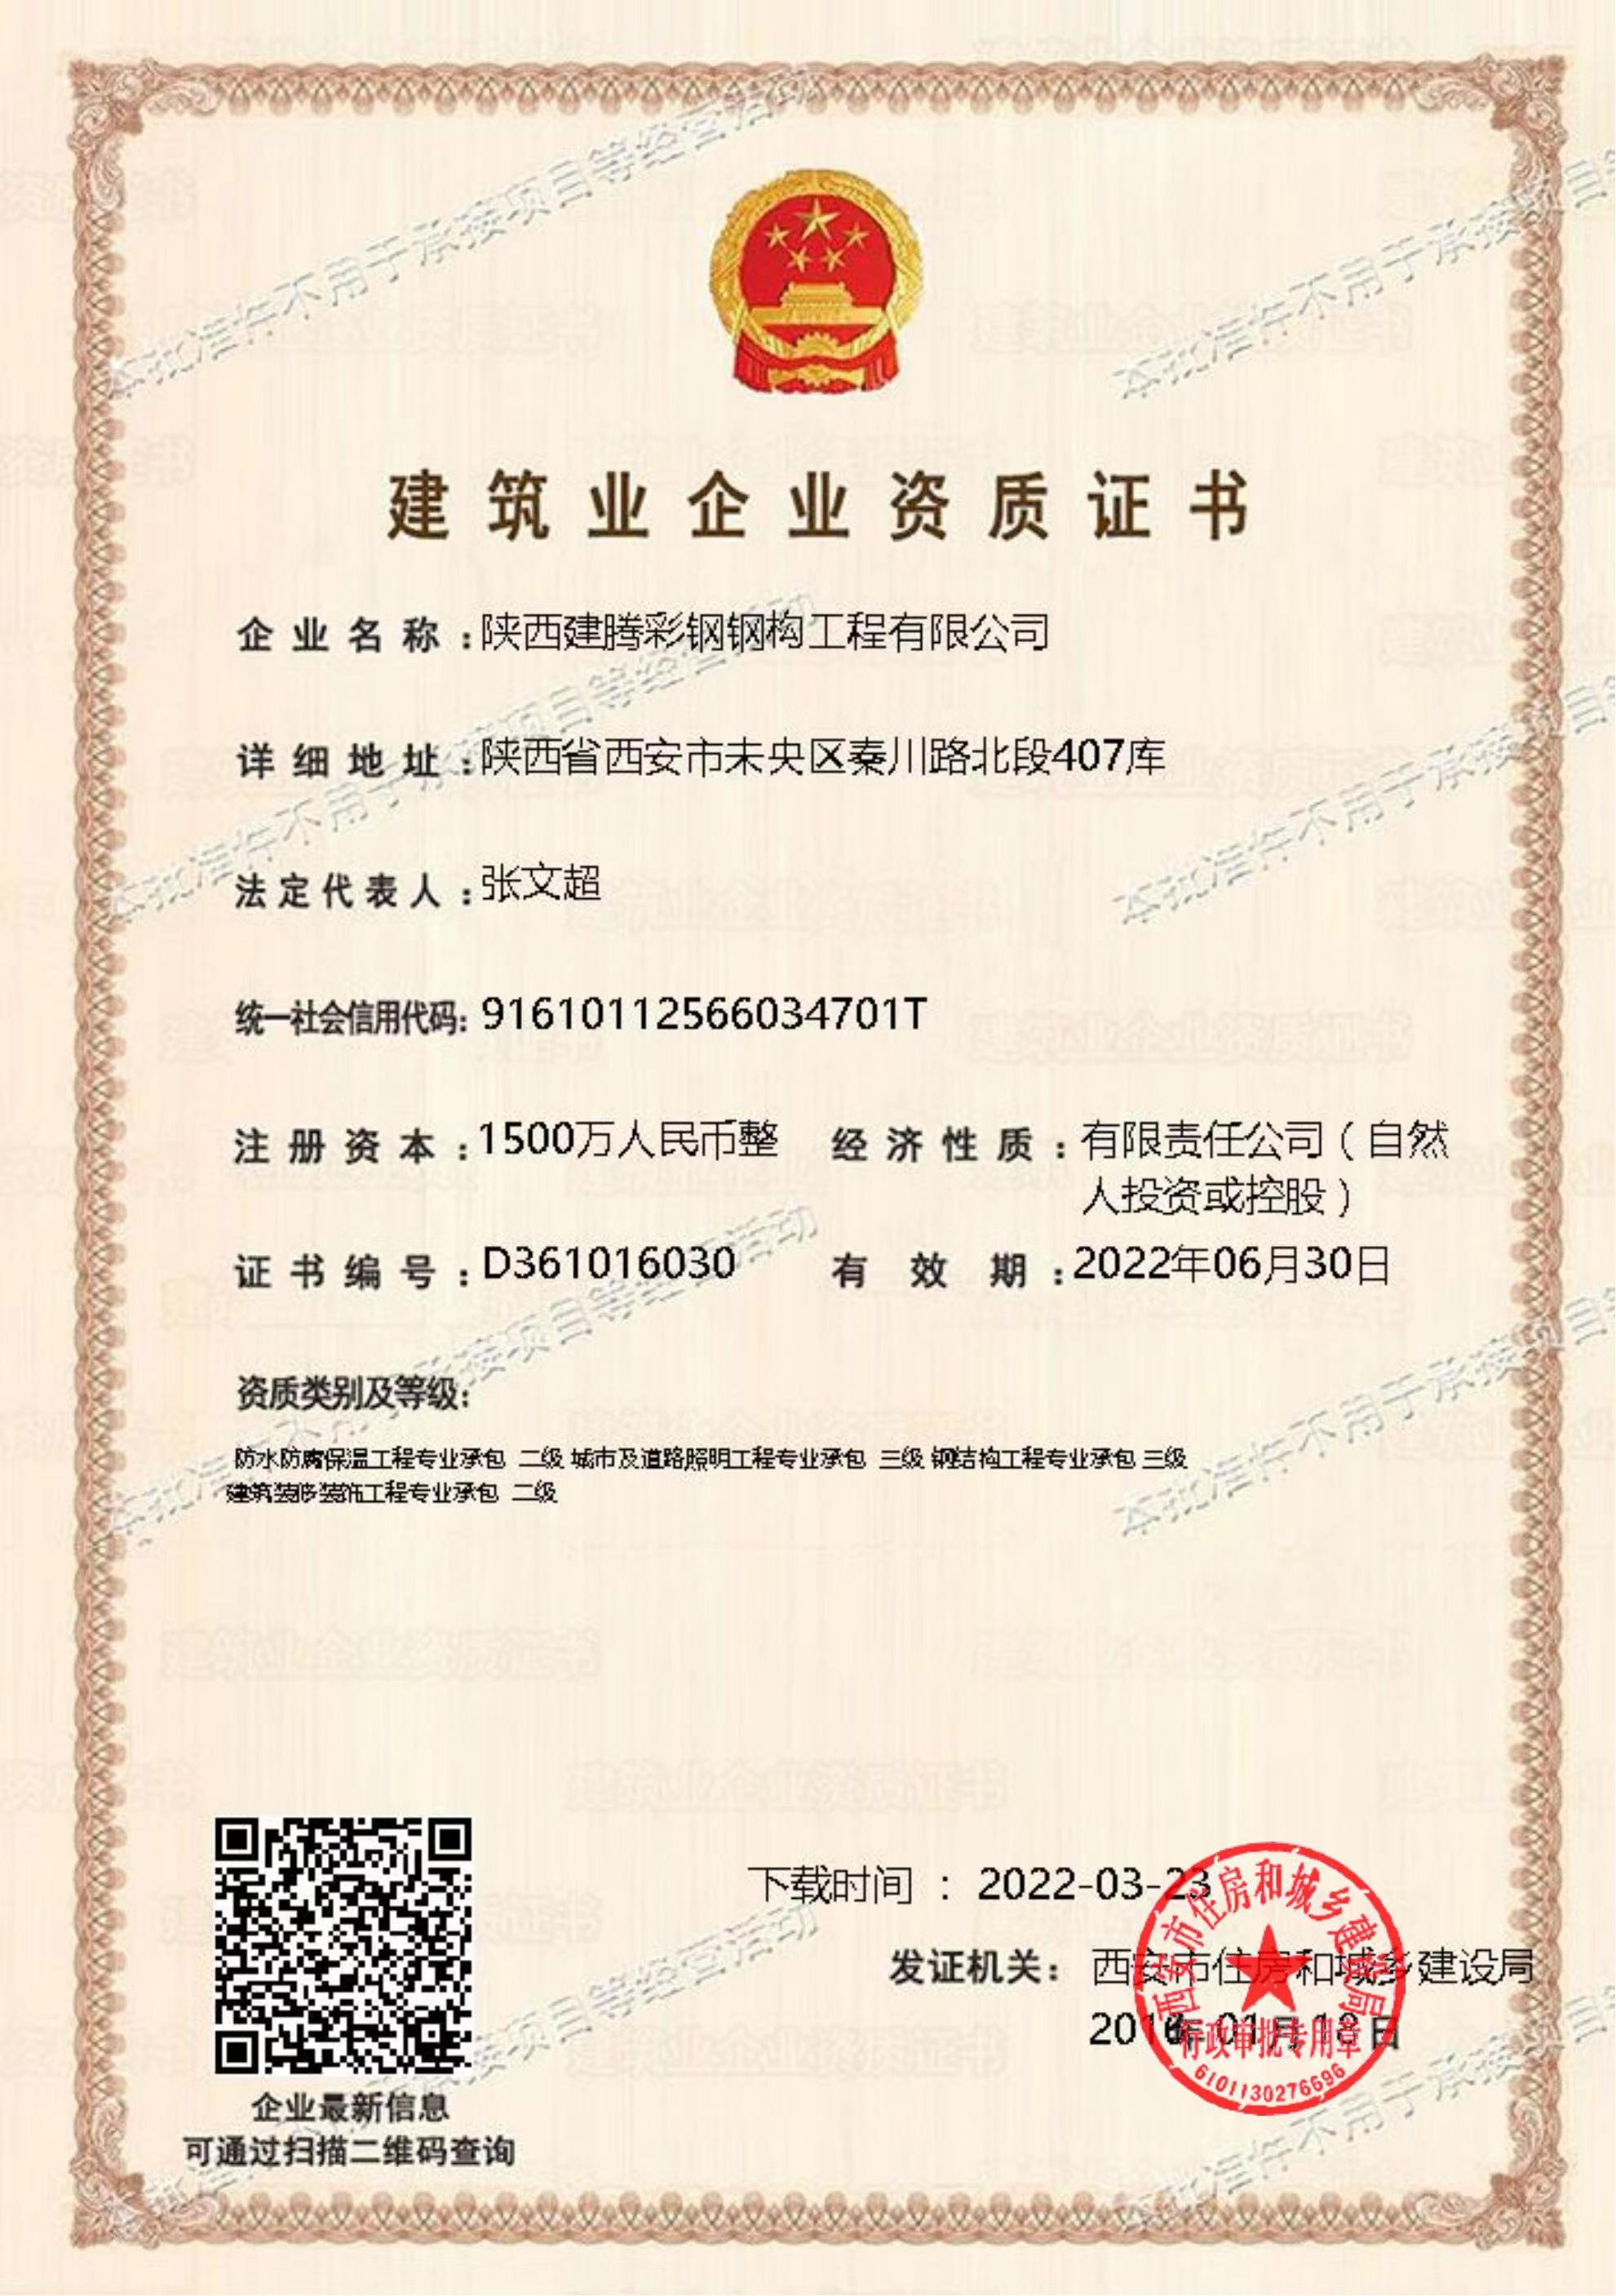 陕西建腾彩钢钢构工程有限公司-建筑业企业资质证书